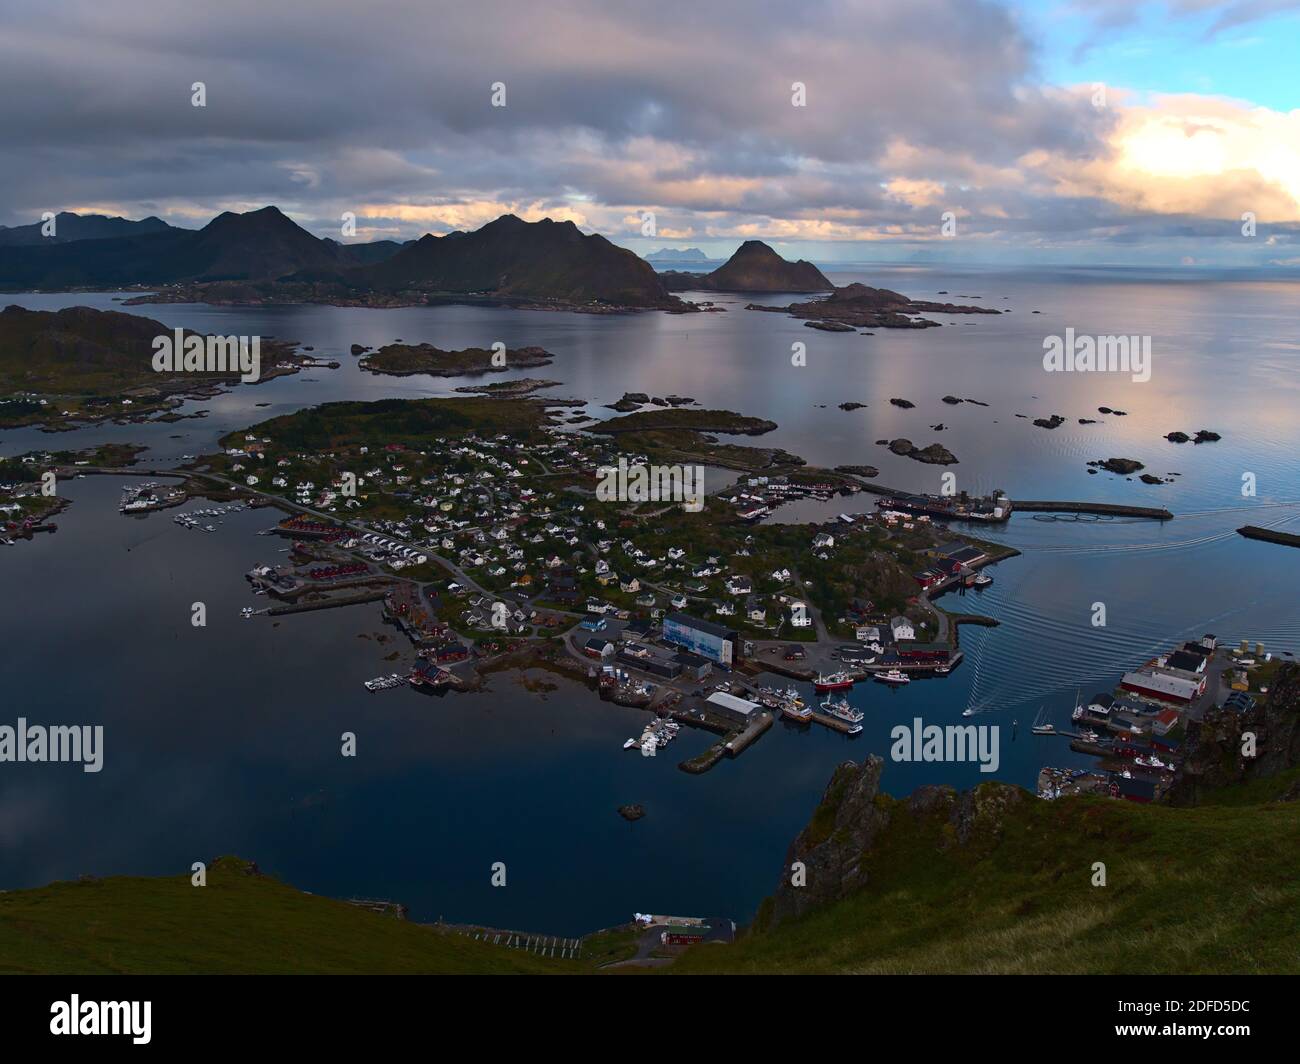 Splendida vista panoramica aerea del villaggio di pescatori Ballstad sulla costa dell'isola di Vestvågøya, Lofoten, Norvegia con porto, magazzini e aspre montagne. Foto Stock